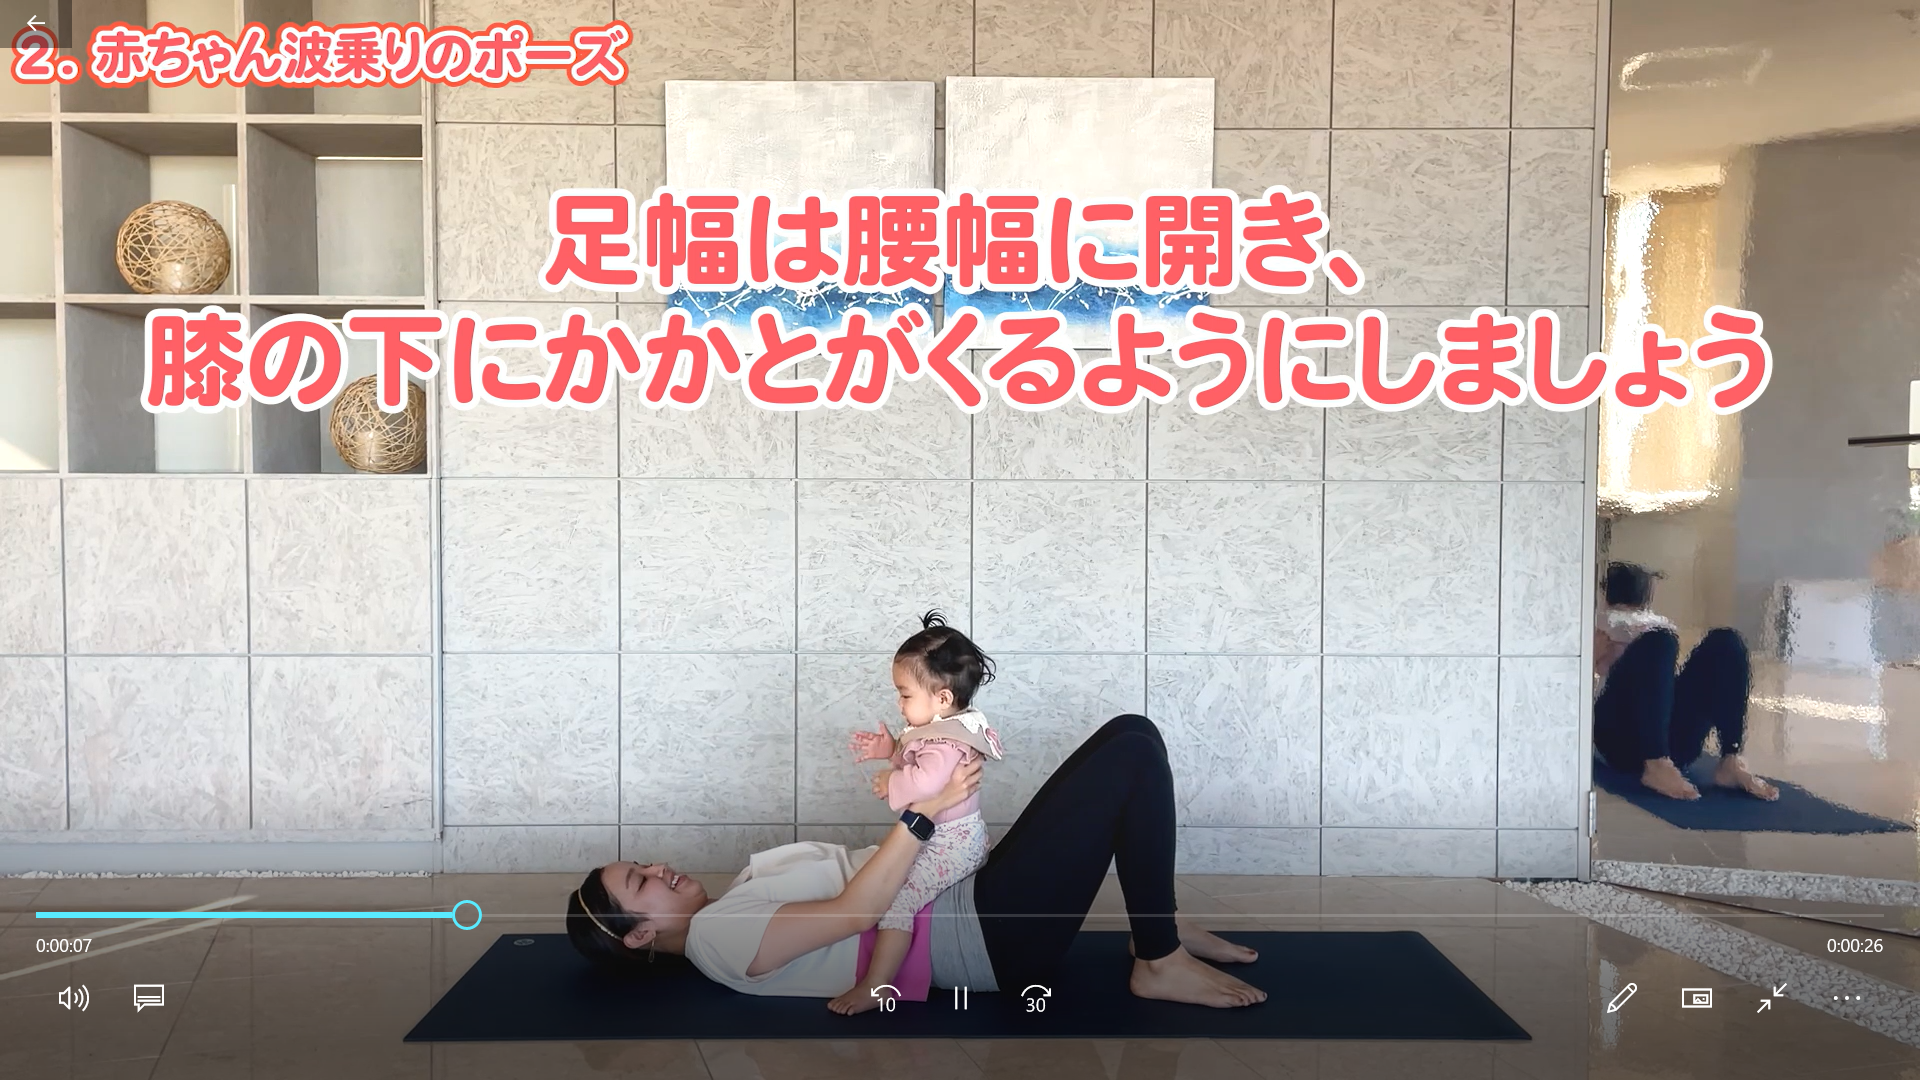 【1分動画】 青木美穂 骨盤のゆがみを整えて腰痛予防「赤ちゃんボートのポーズ」